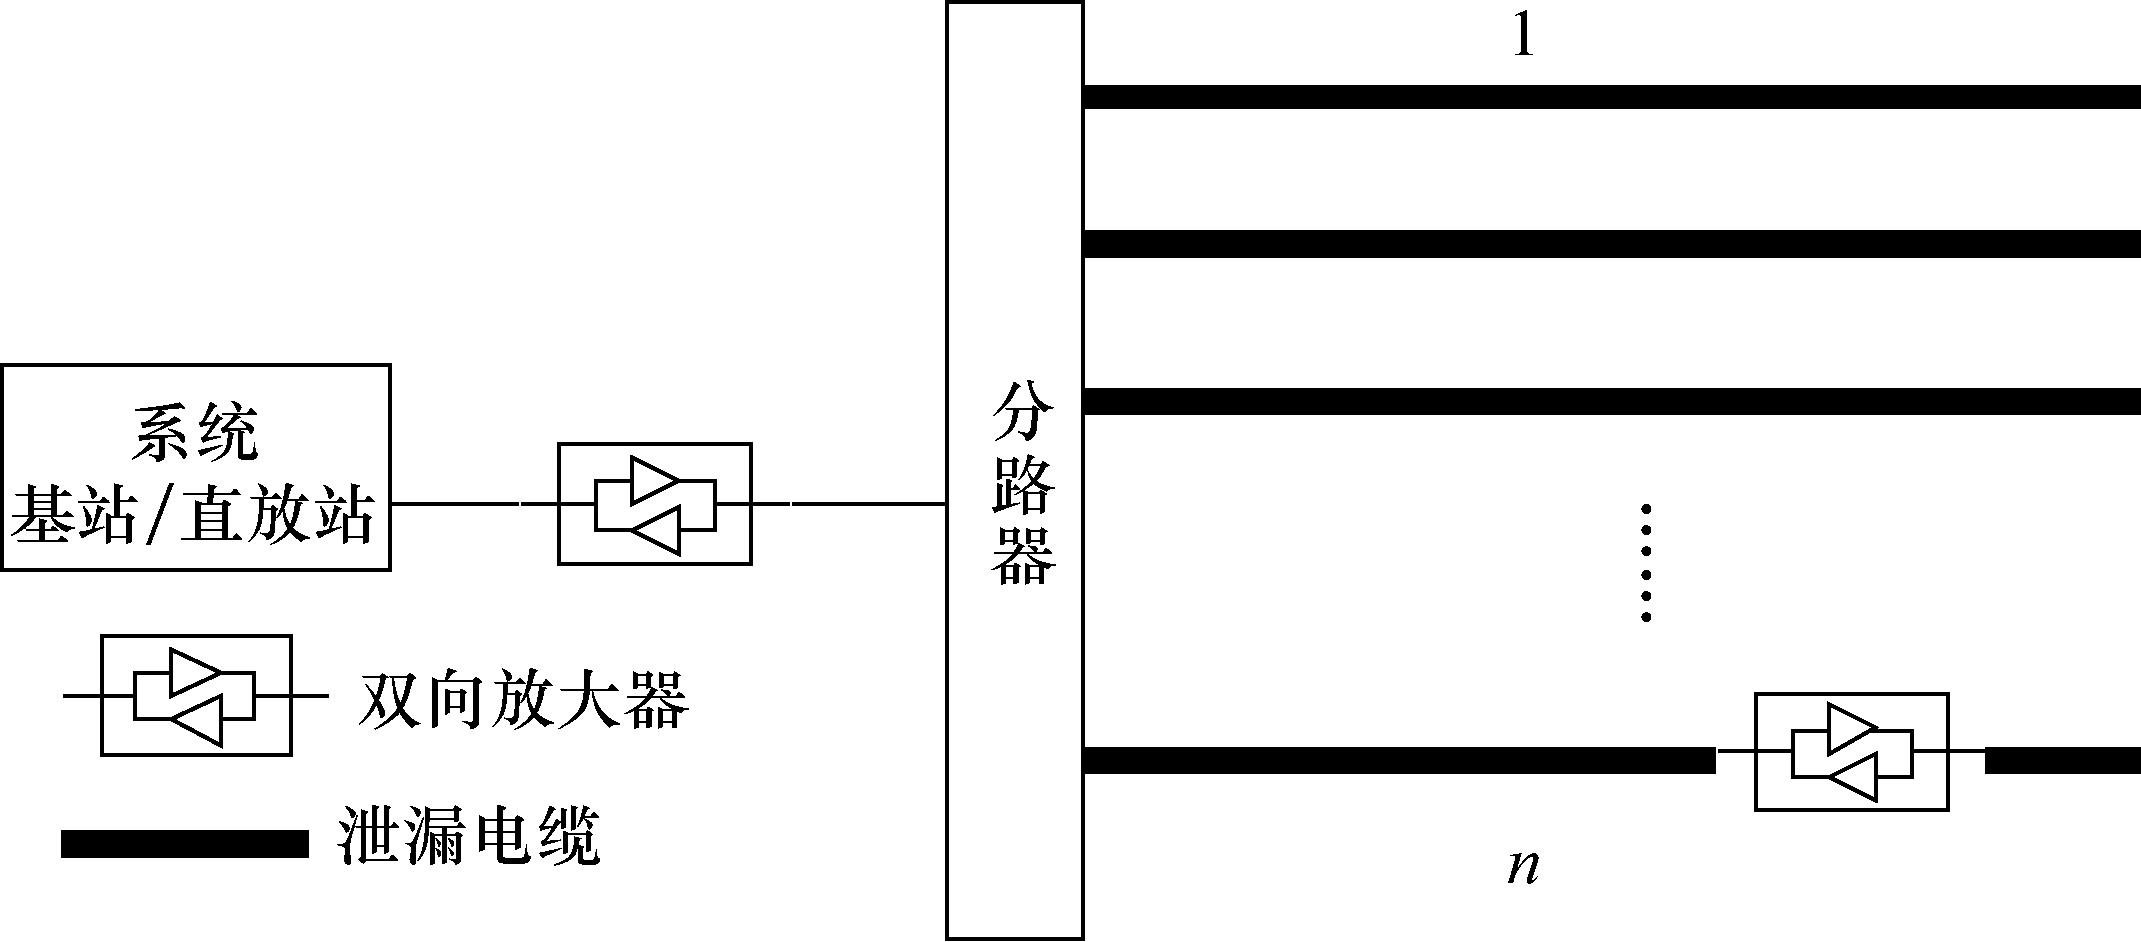 圖10-30  泄漏電纜分布系統示意圖